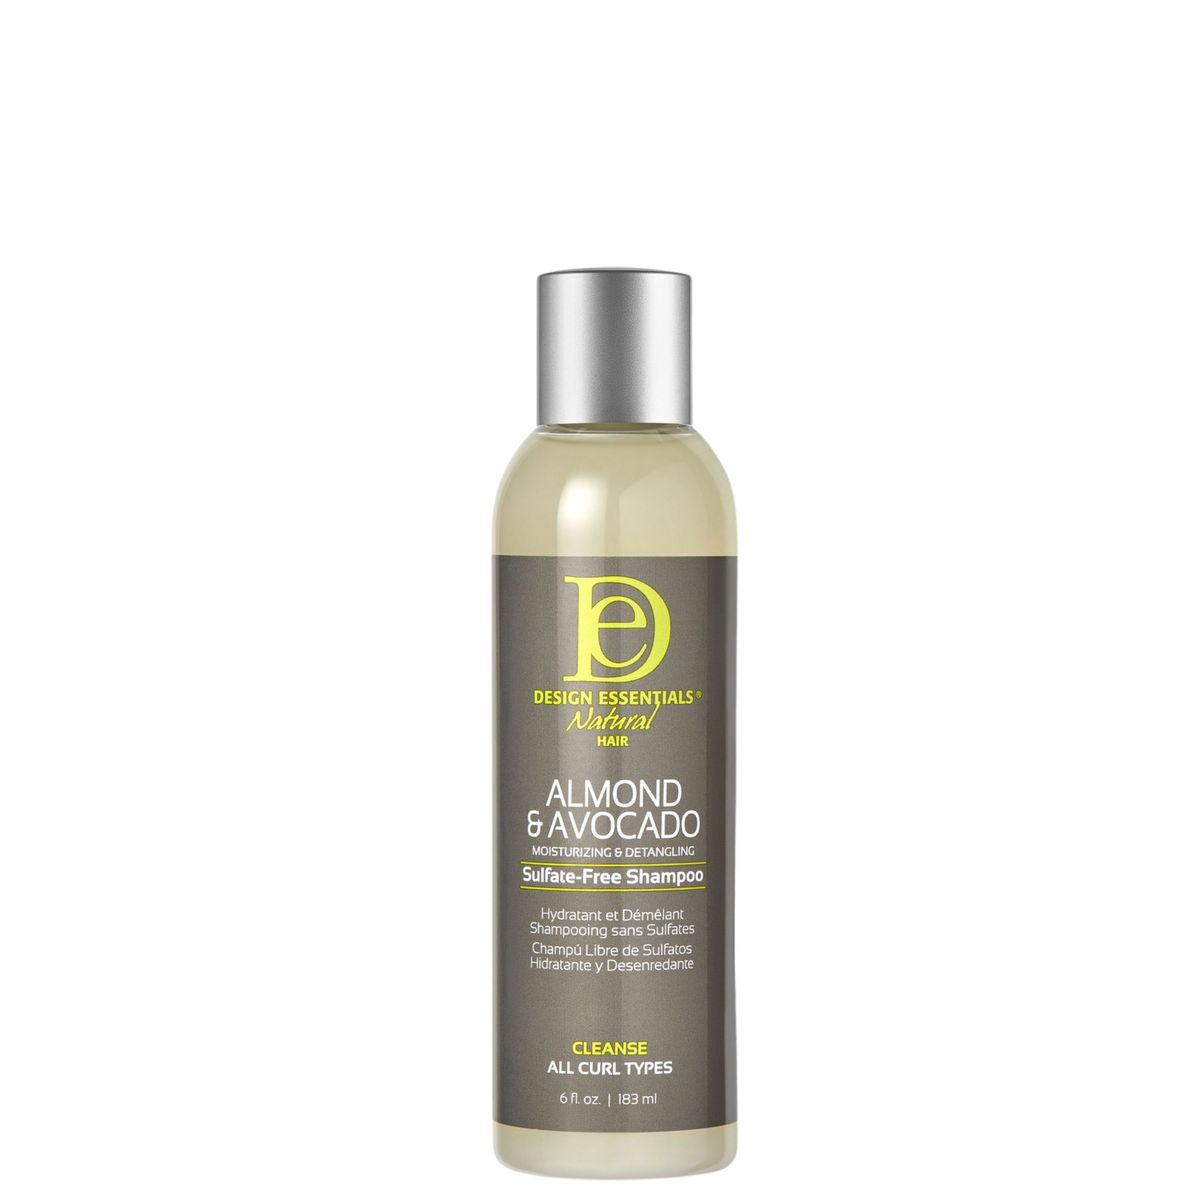 Design Essentials Almond And Avocado Detangling Shampoo Shop Today Get 6002